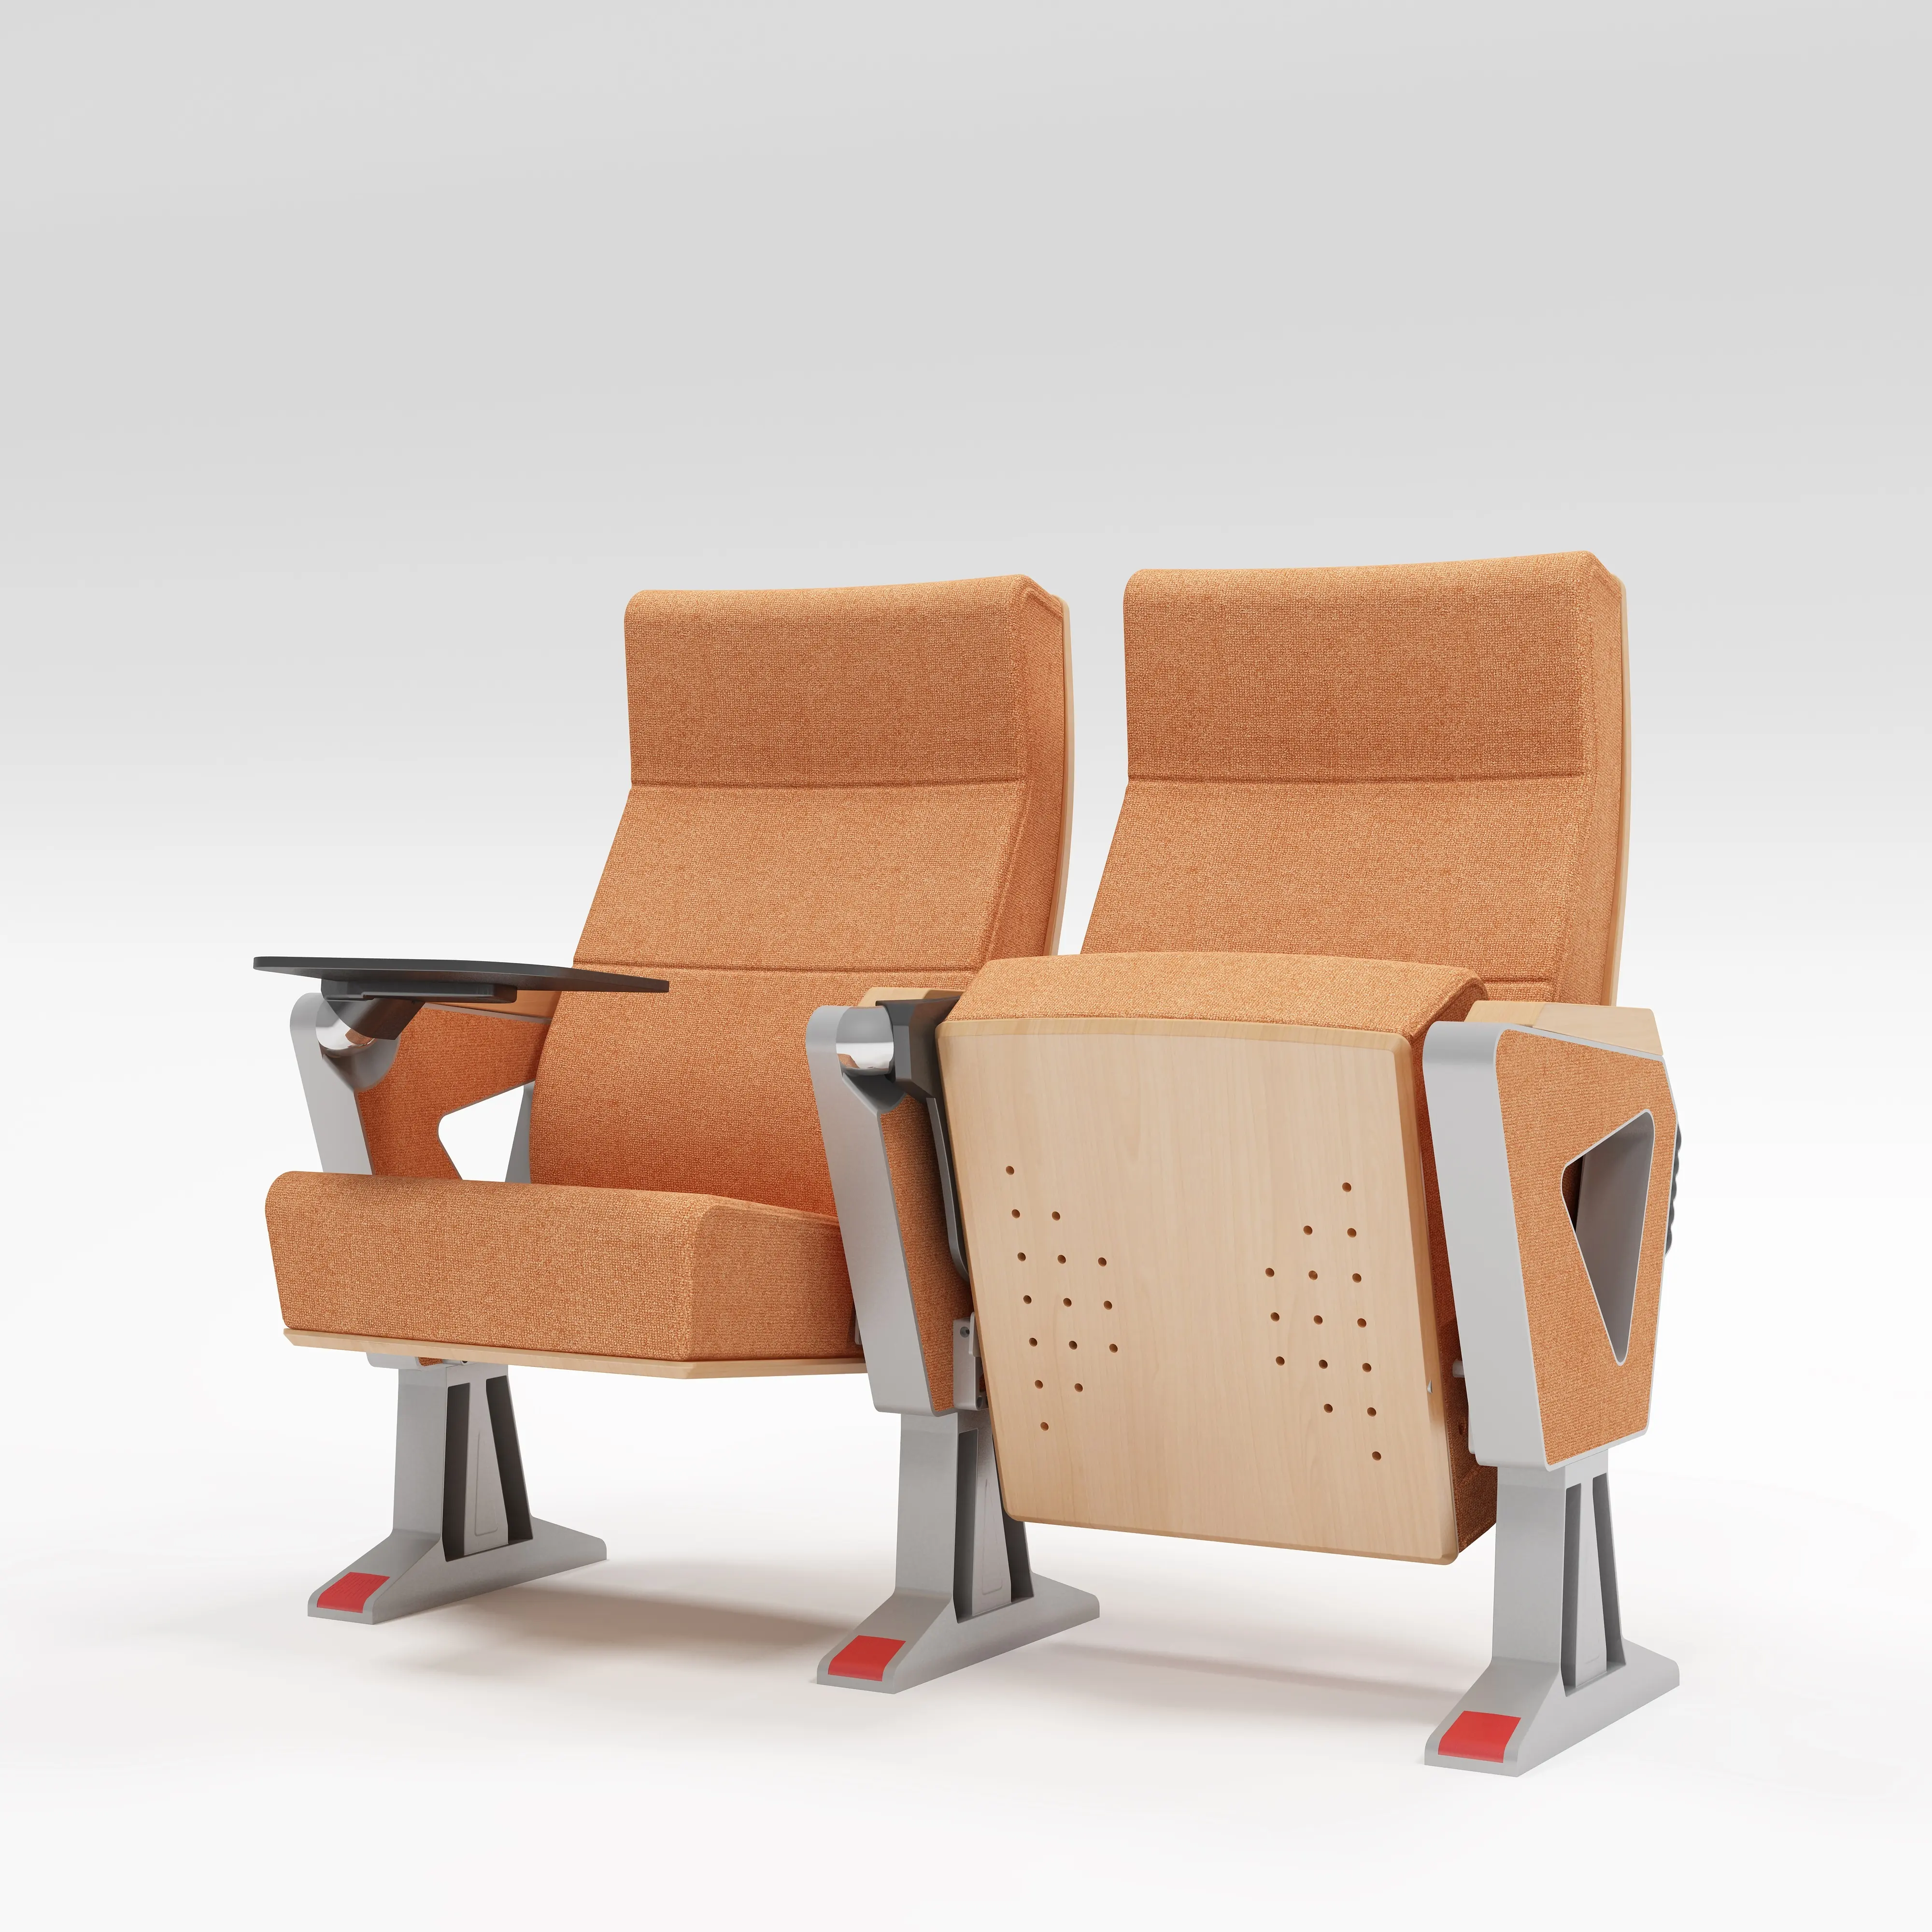 Muebles de cine en casa duraderos plegables de tela modernos sillas de Cine de auditorio plegables 3D